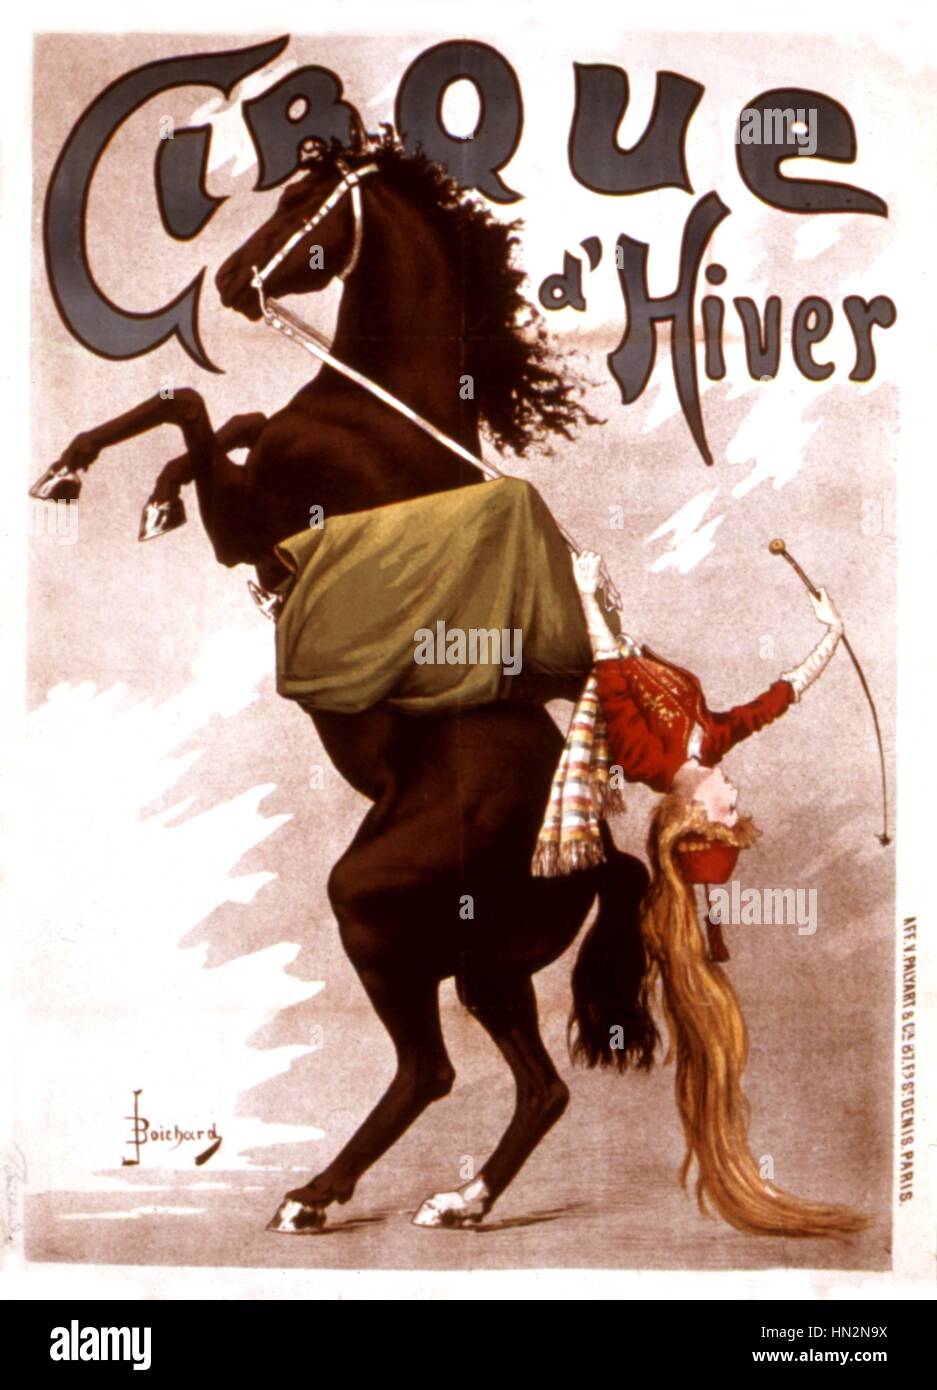 Cartel publicitario para el Cirque d'Hiver Francia del siglo XIX. Foto de stock